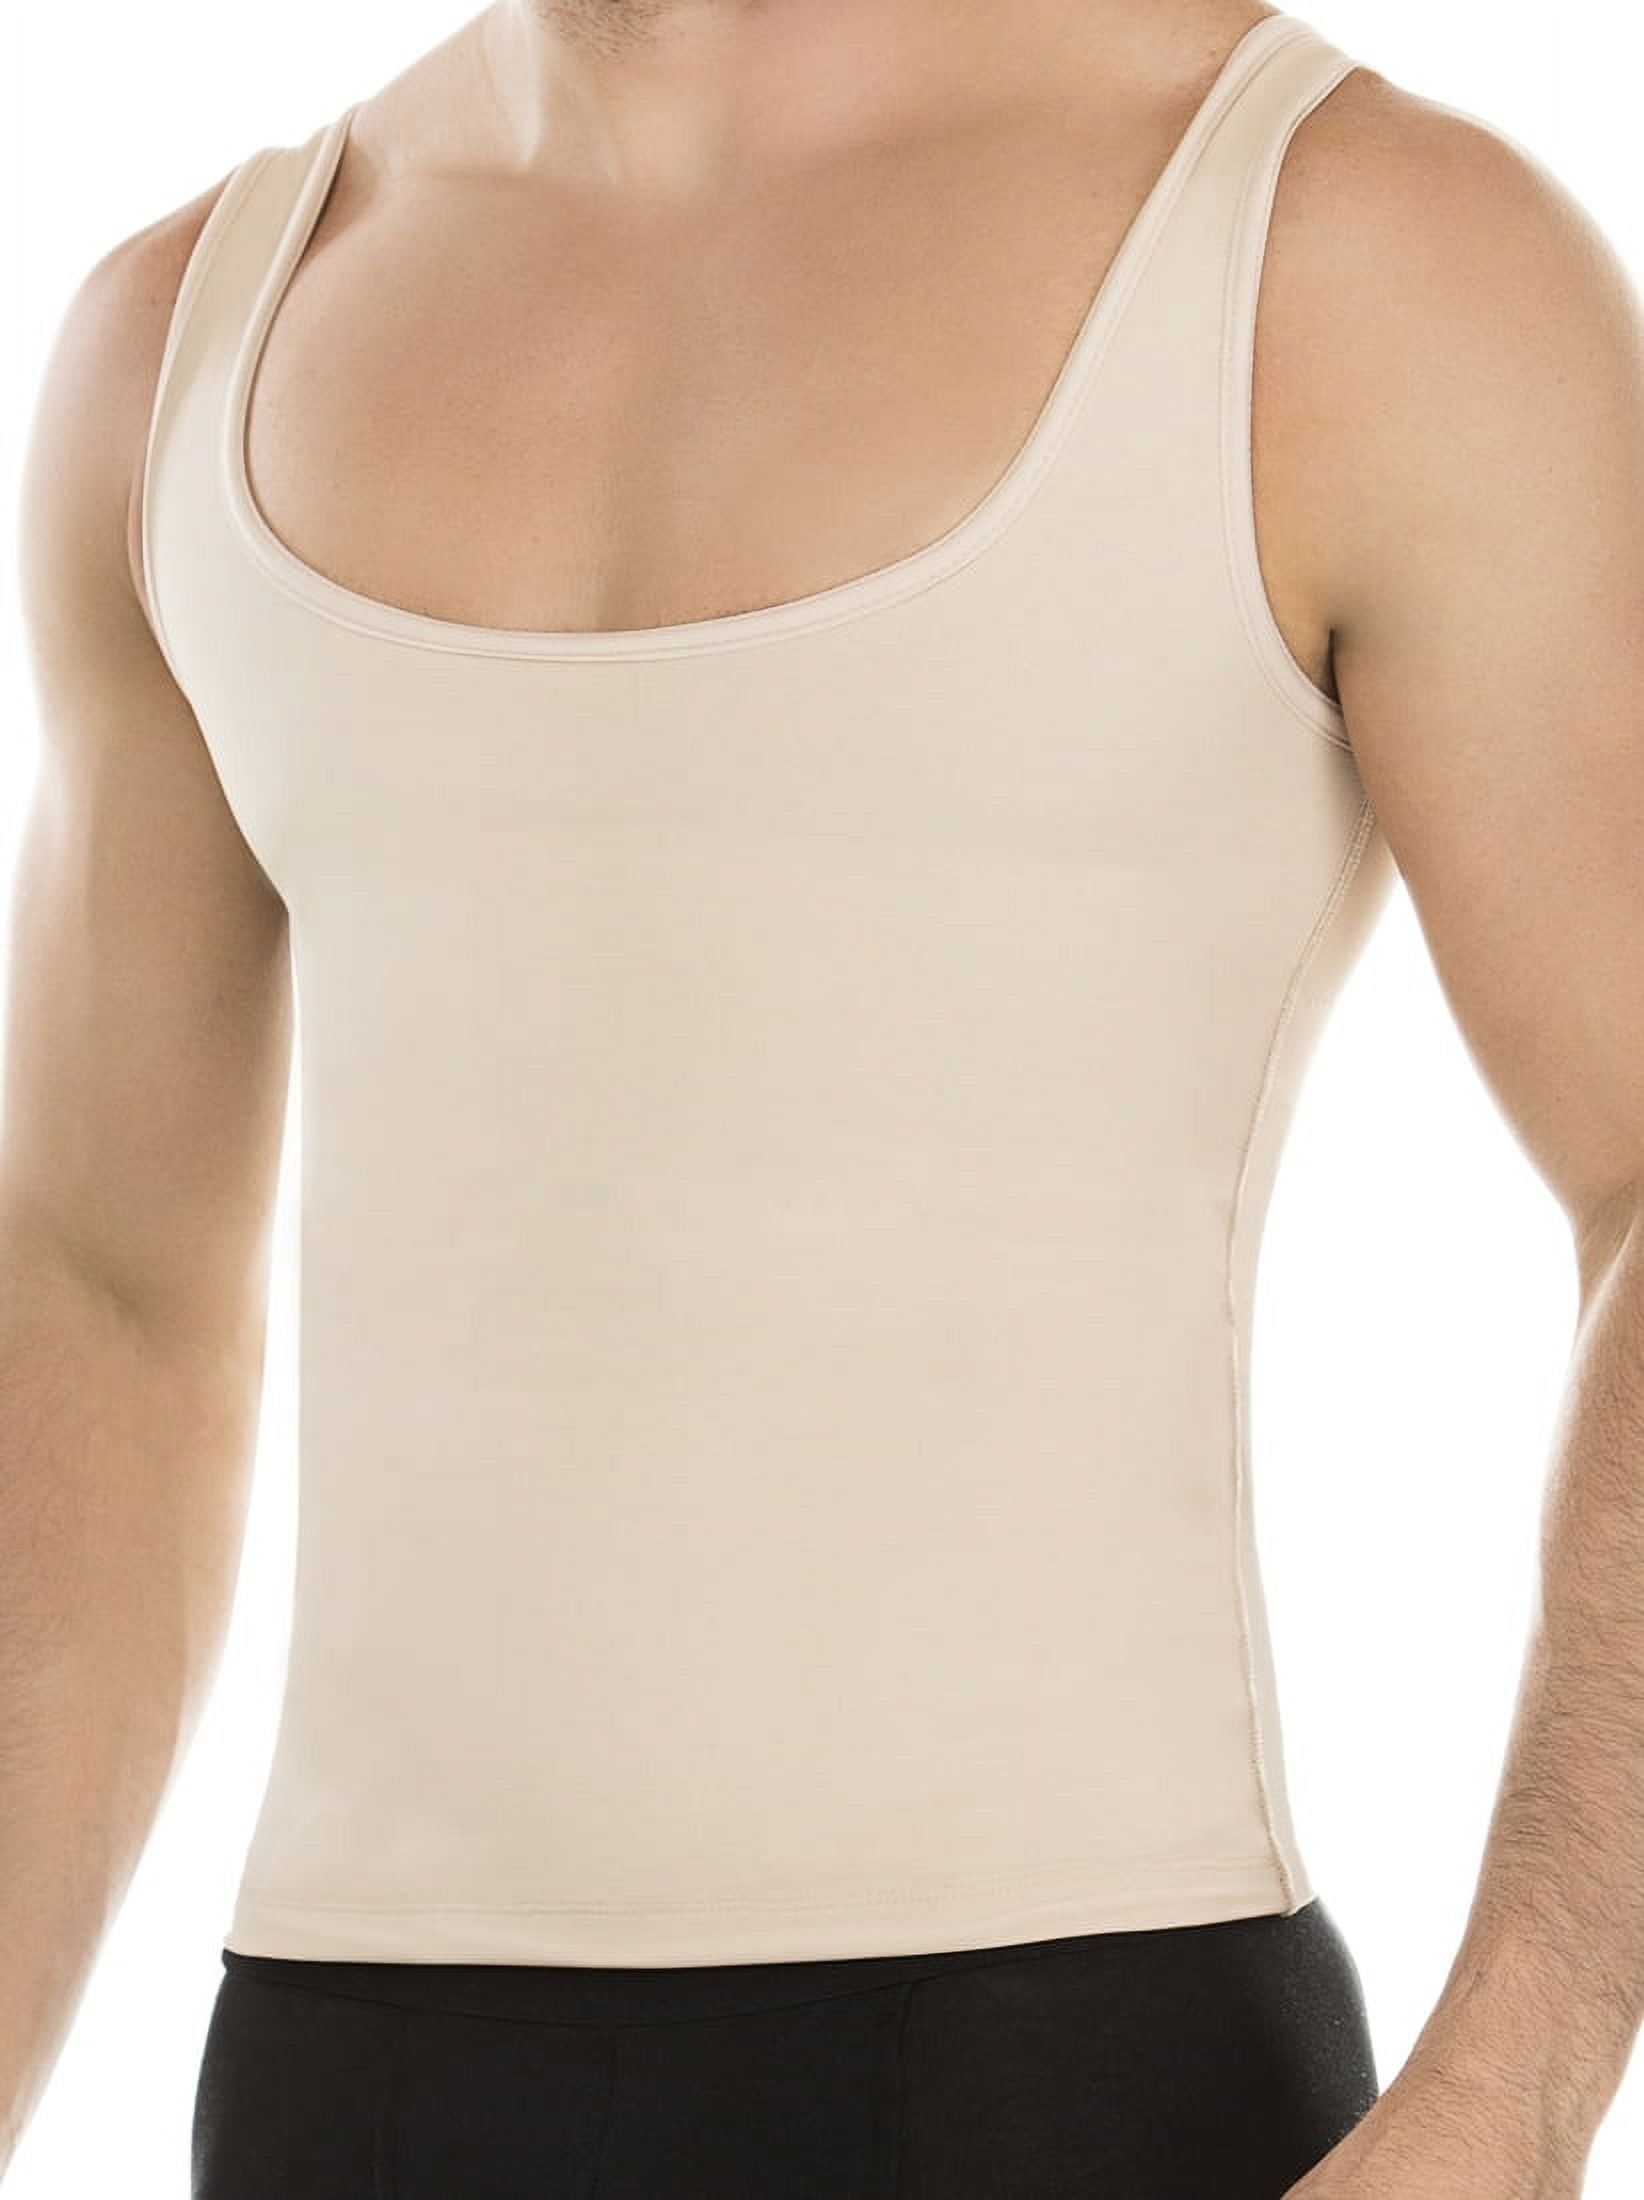 Fajas Para Hombres Faja Reductora De Hombre Mens Body Shaper Tummy